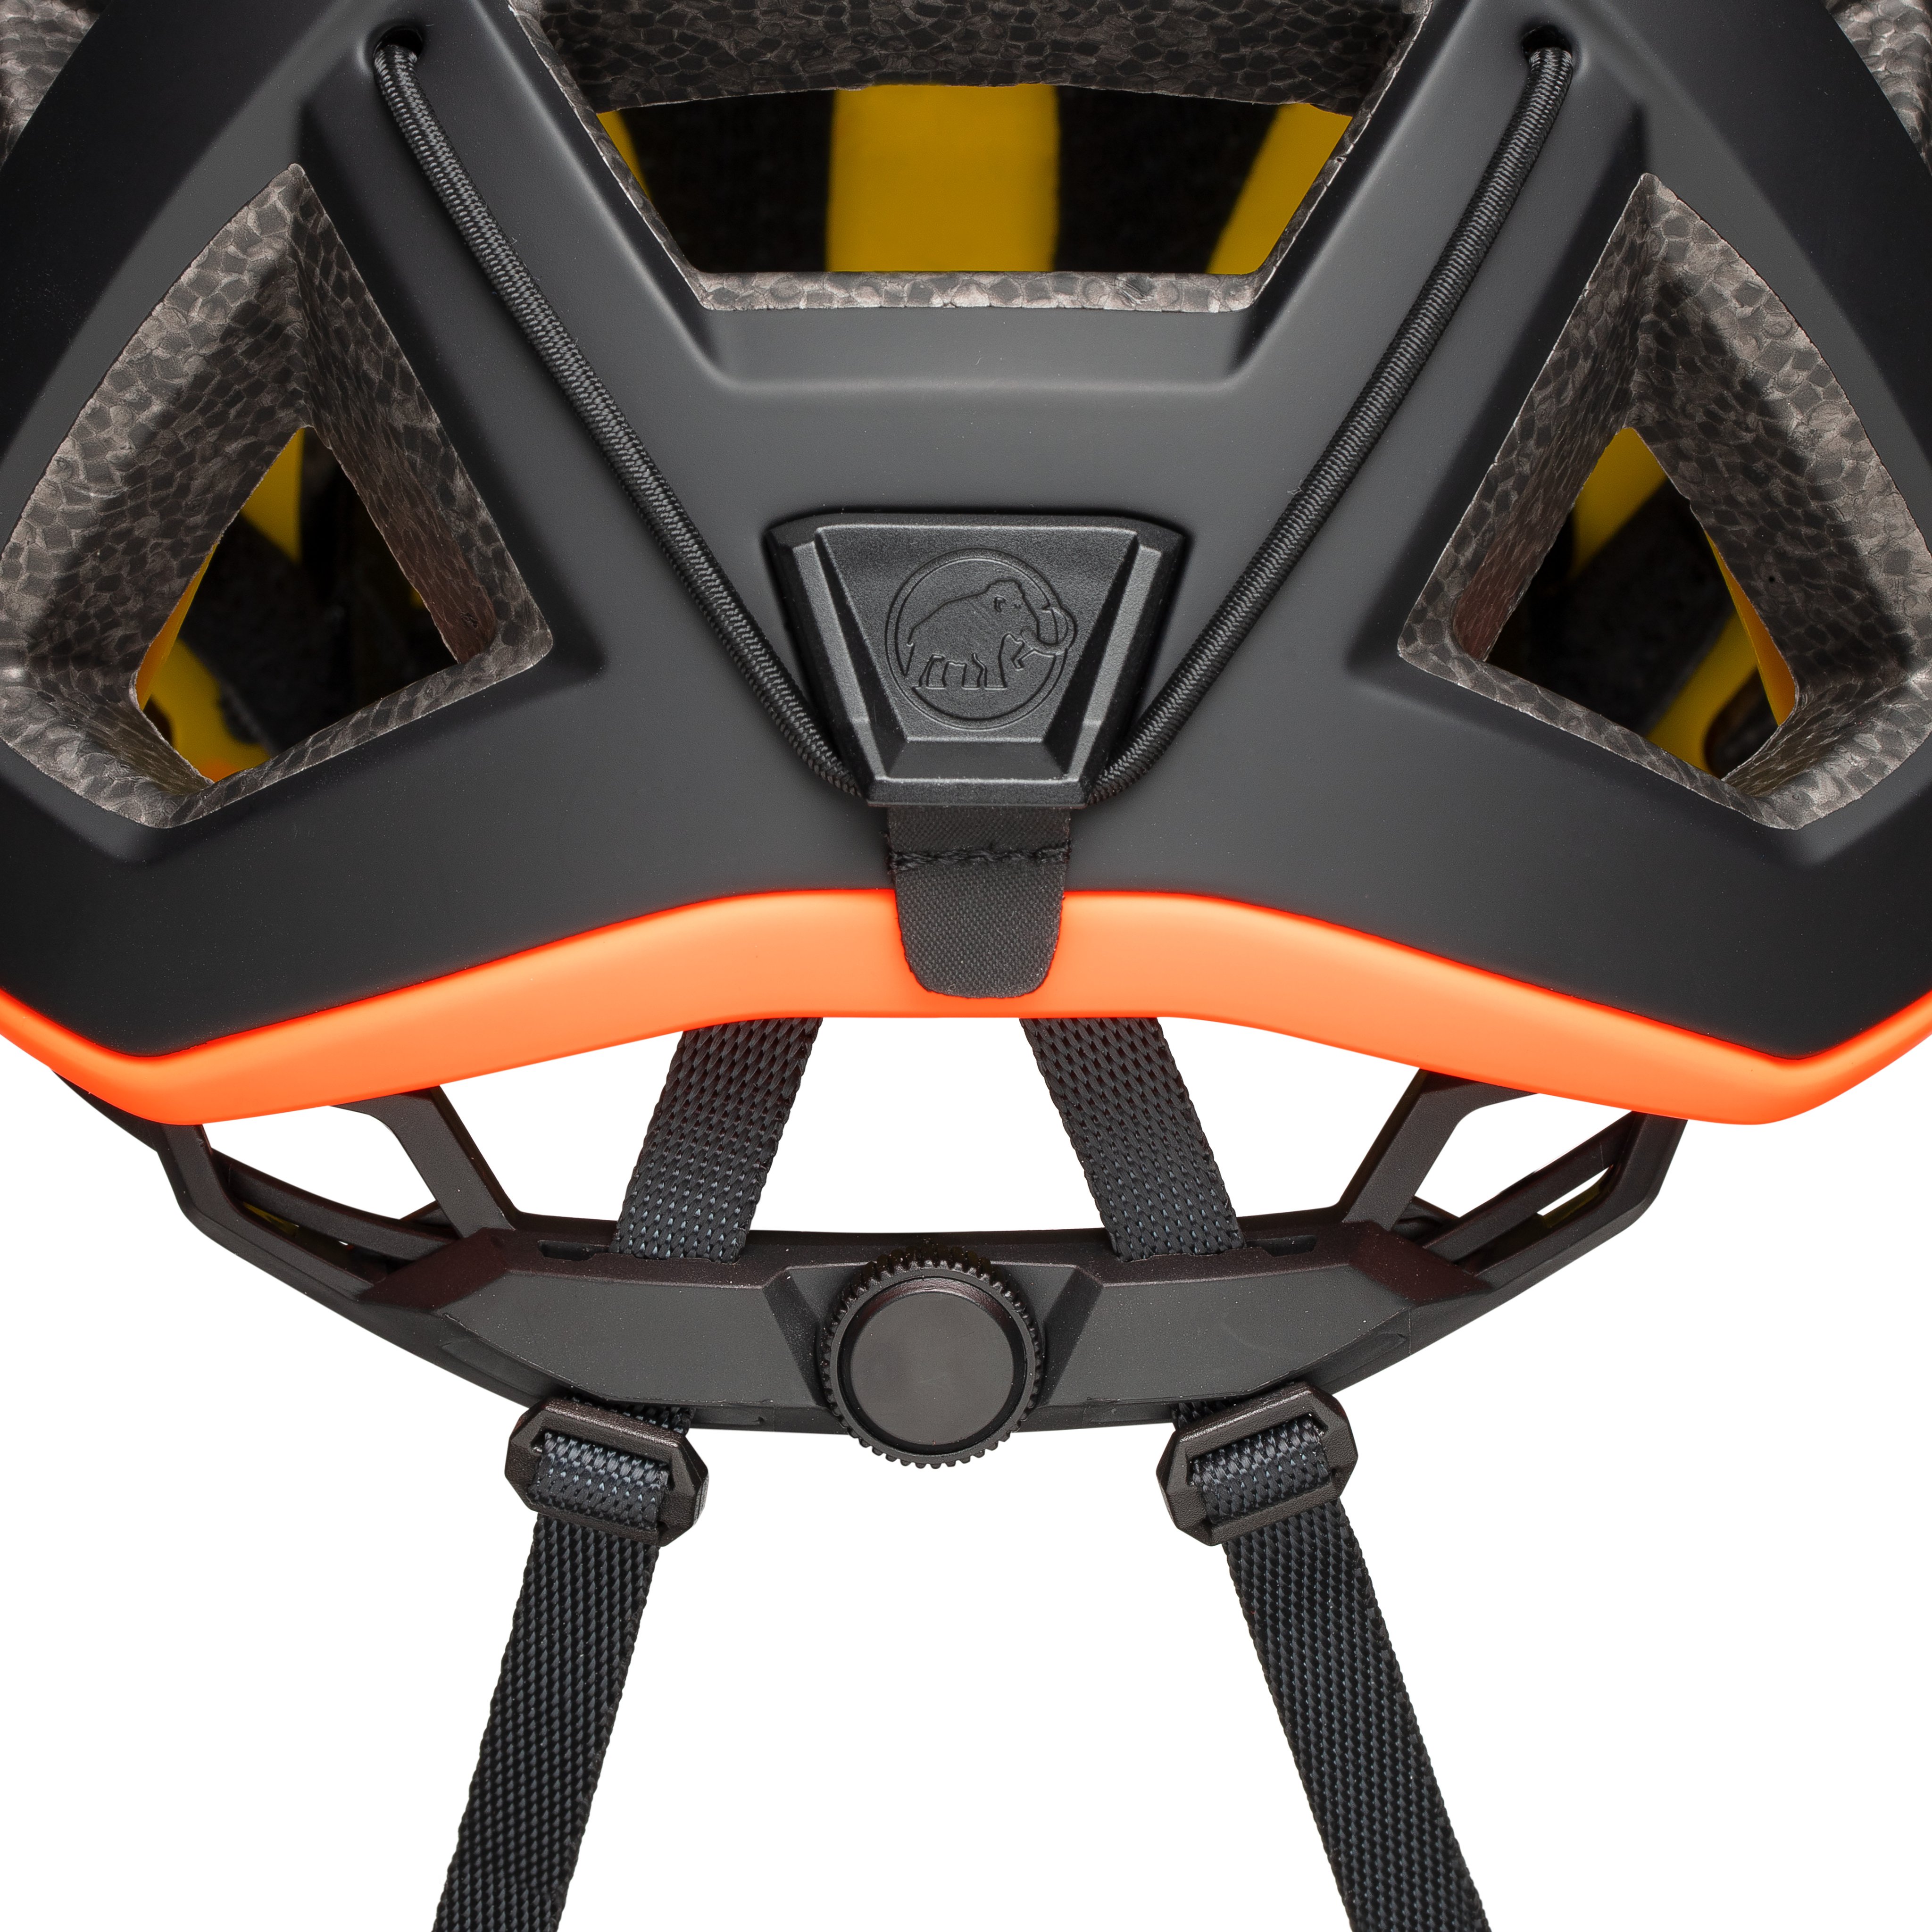 Crag Sender MIPS Helmet product image